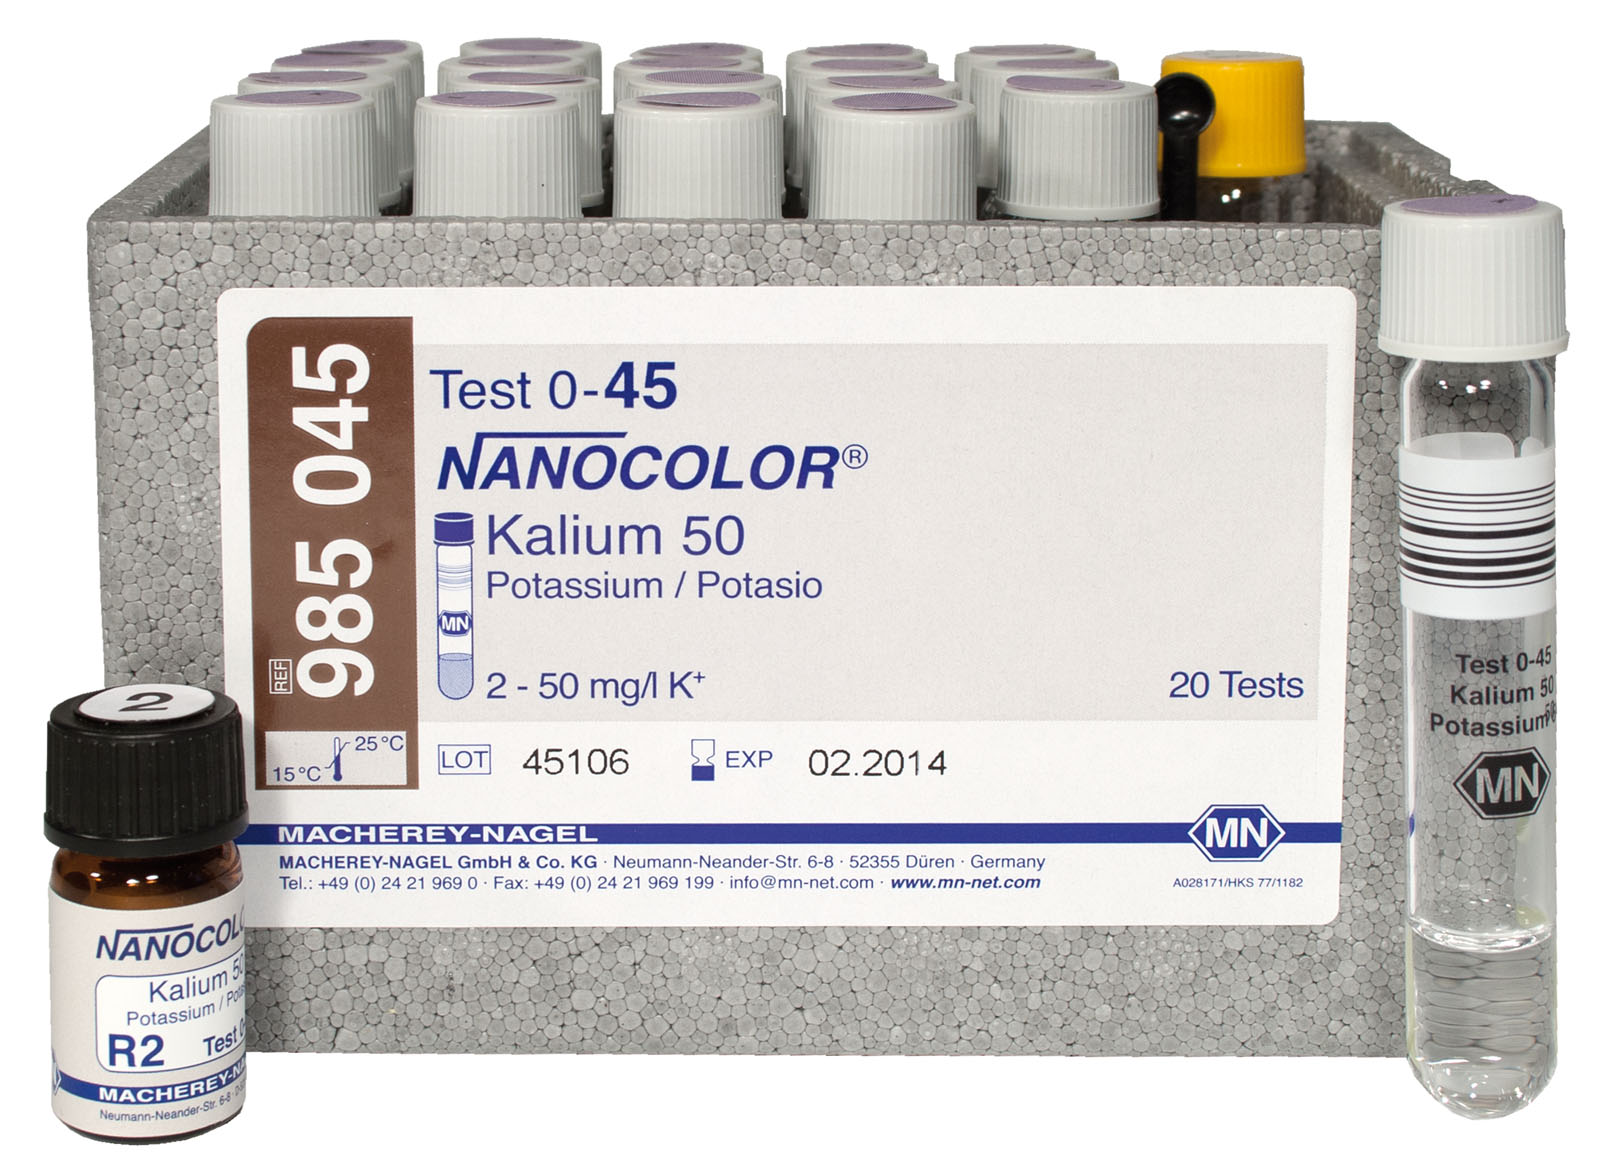 RUK NANOCOLOR- Kalium 50 Test